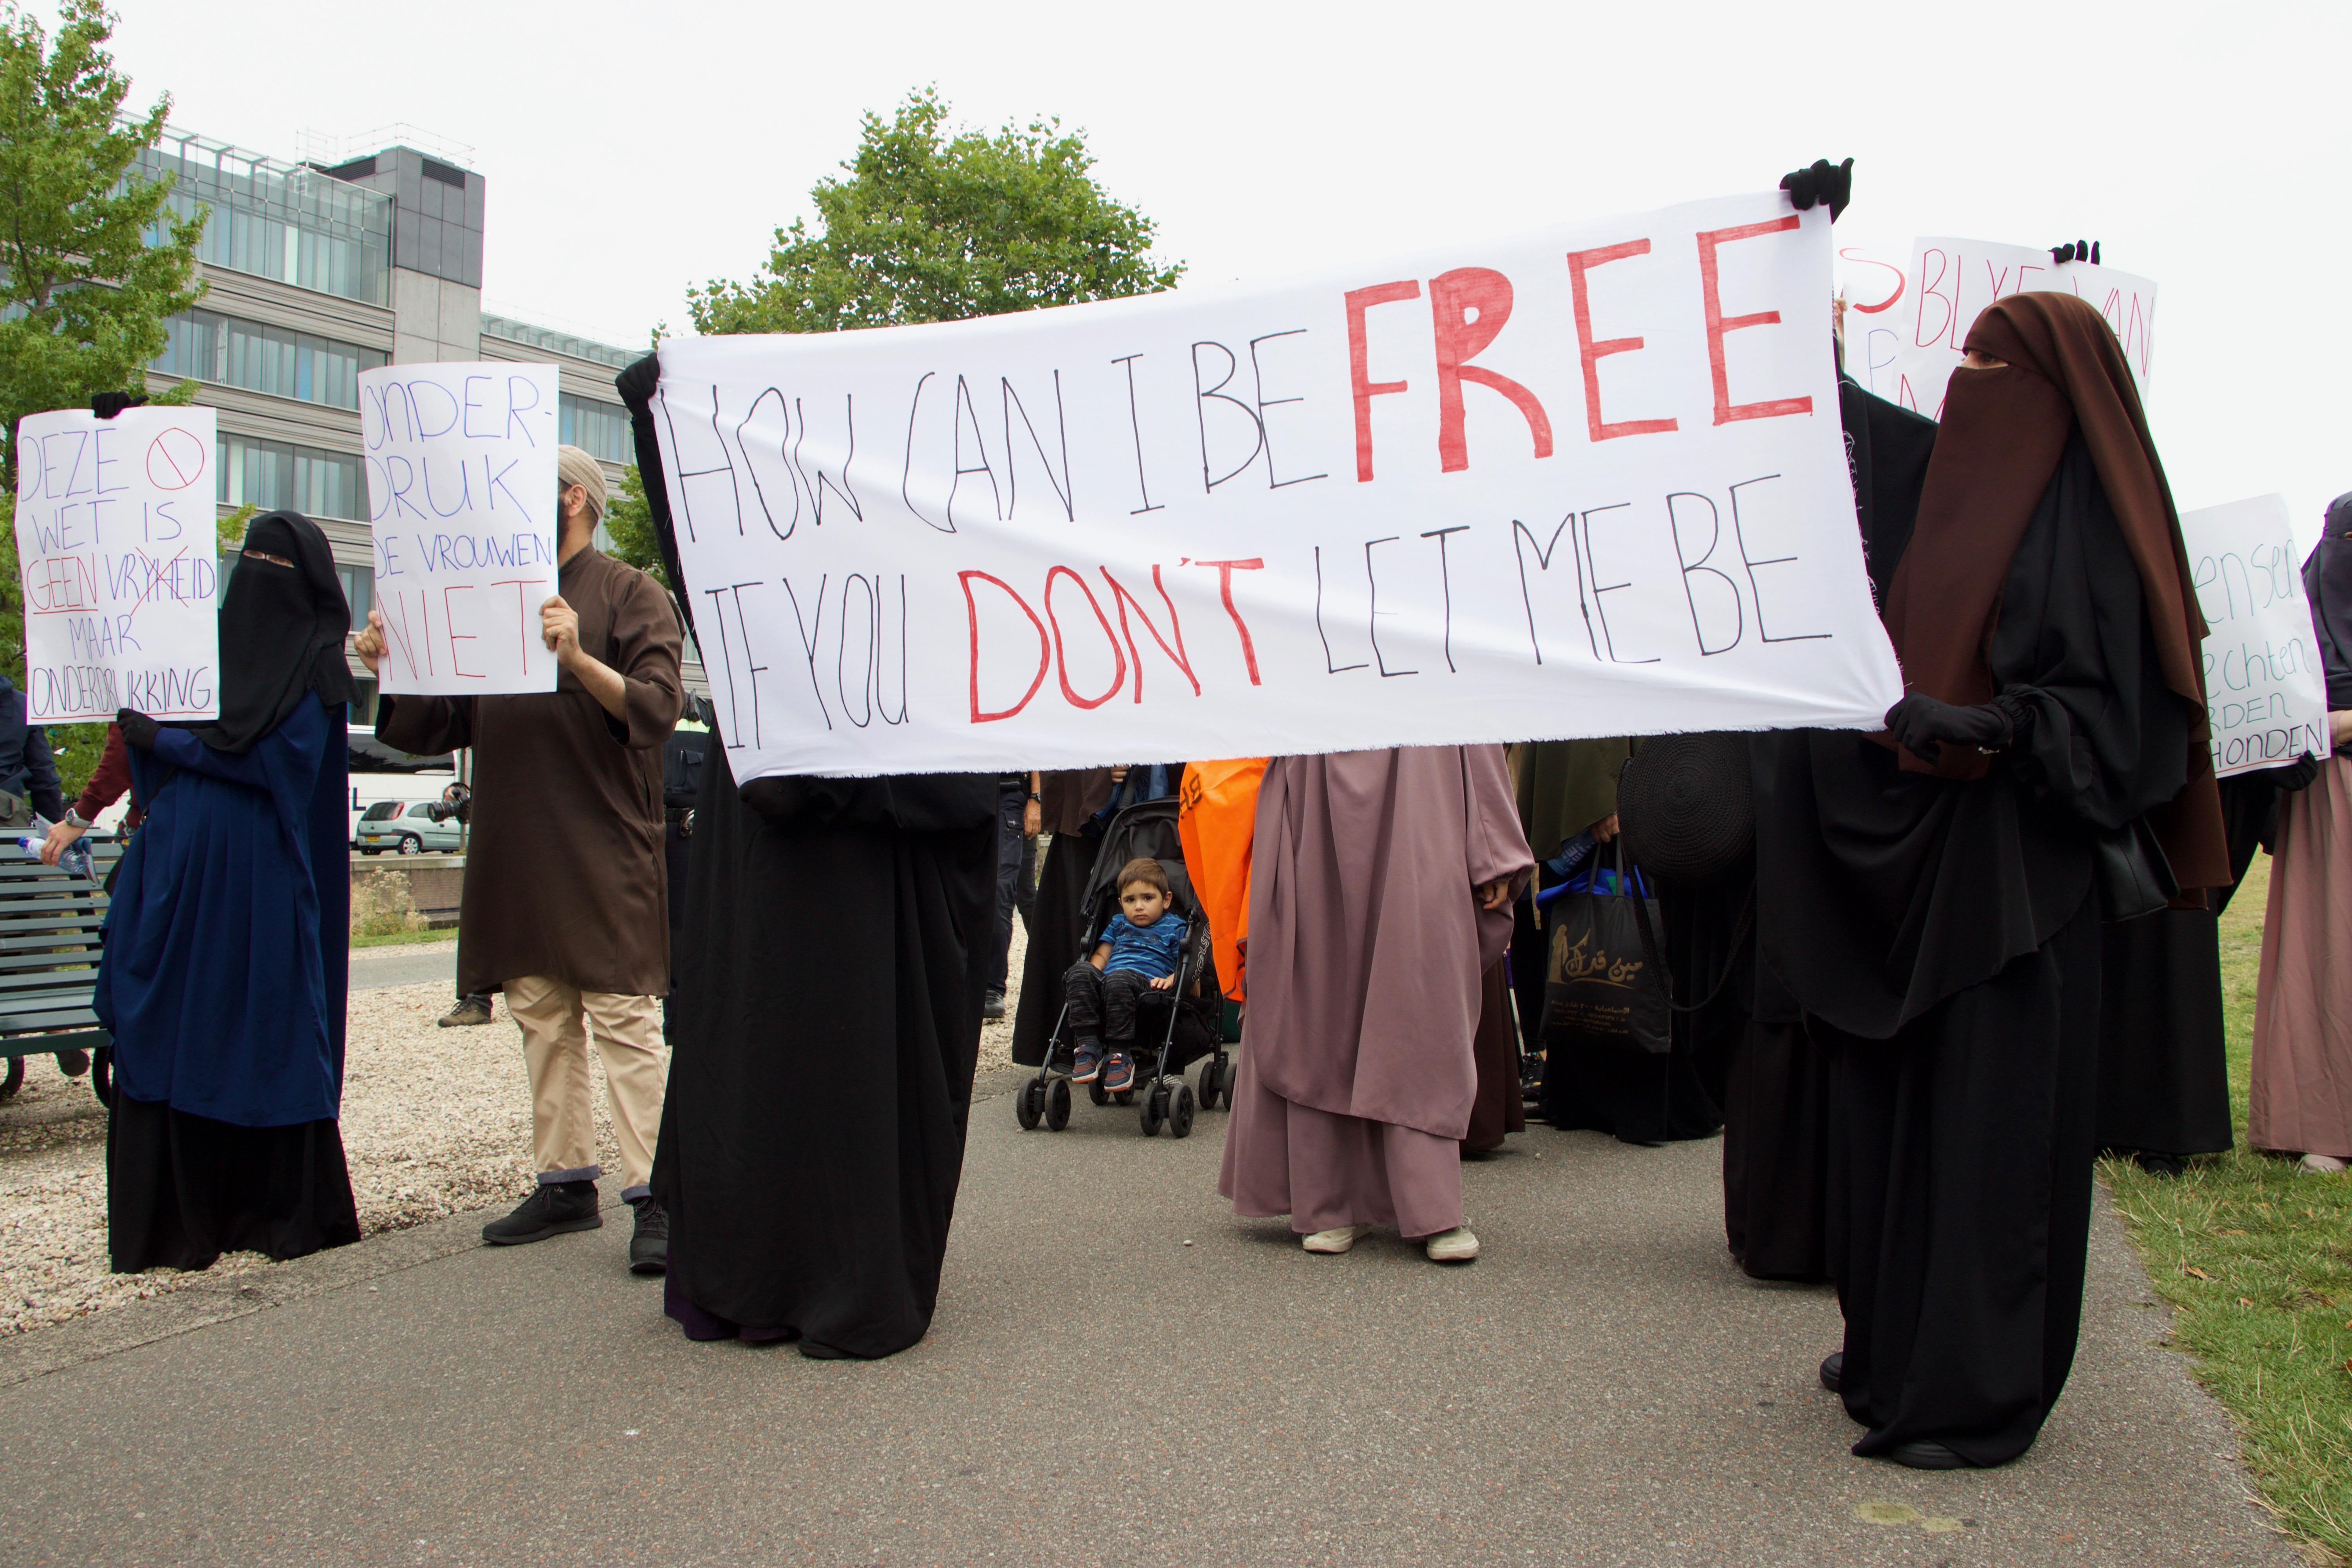 Hollanda’da burka yasağı protestosu